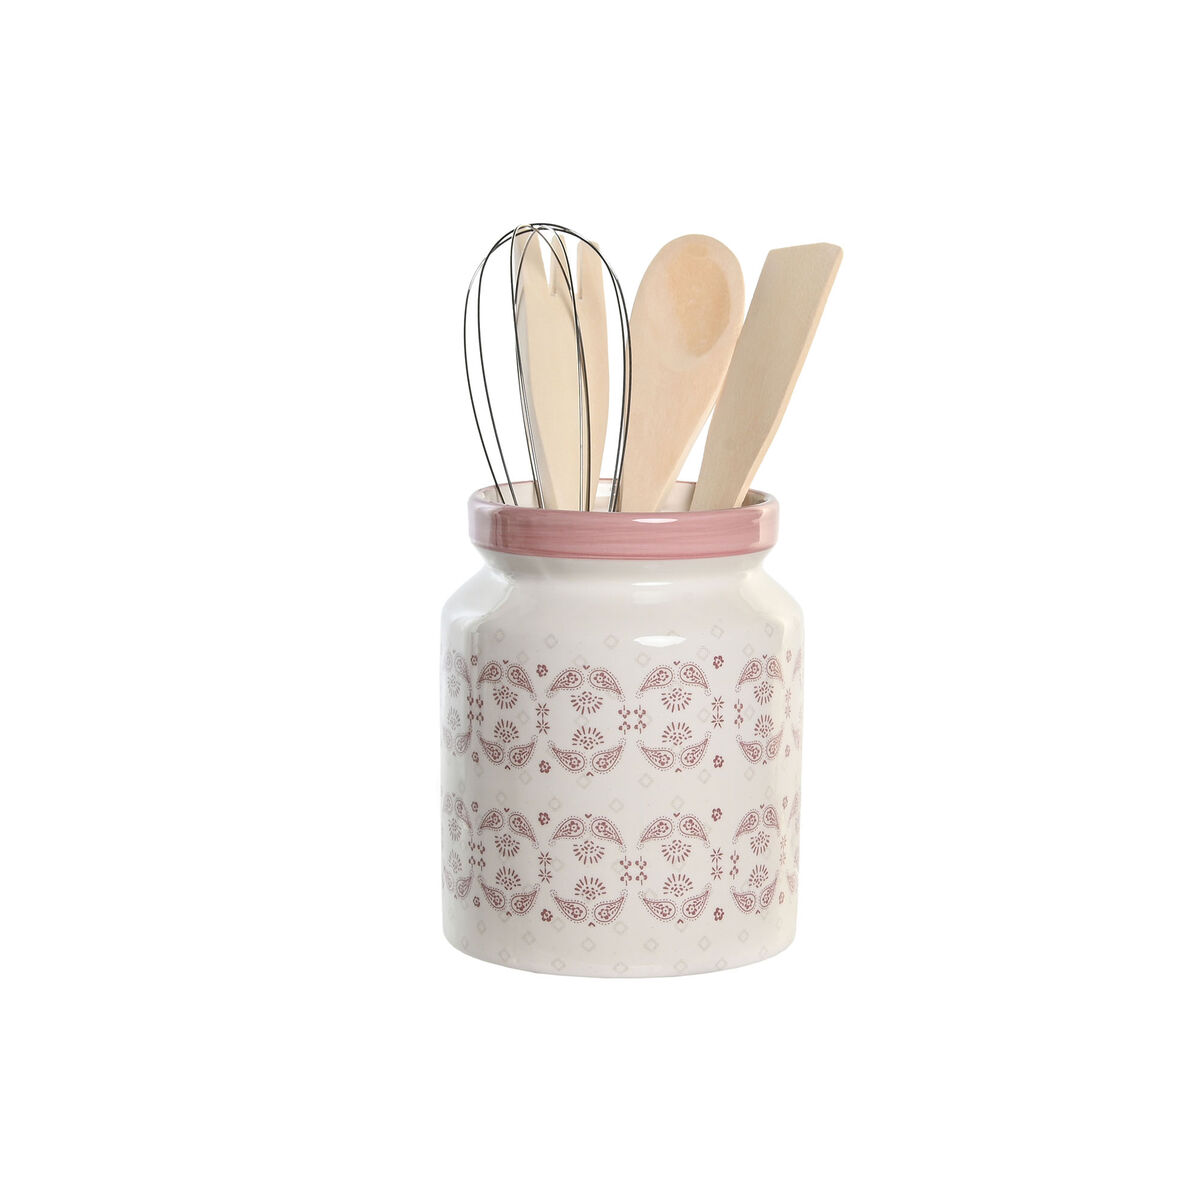 Bote de cerámica para utensilios de cocina - Beige claro - HOME